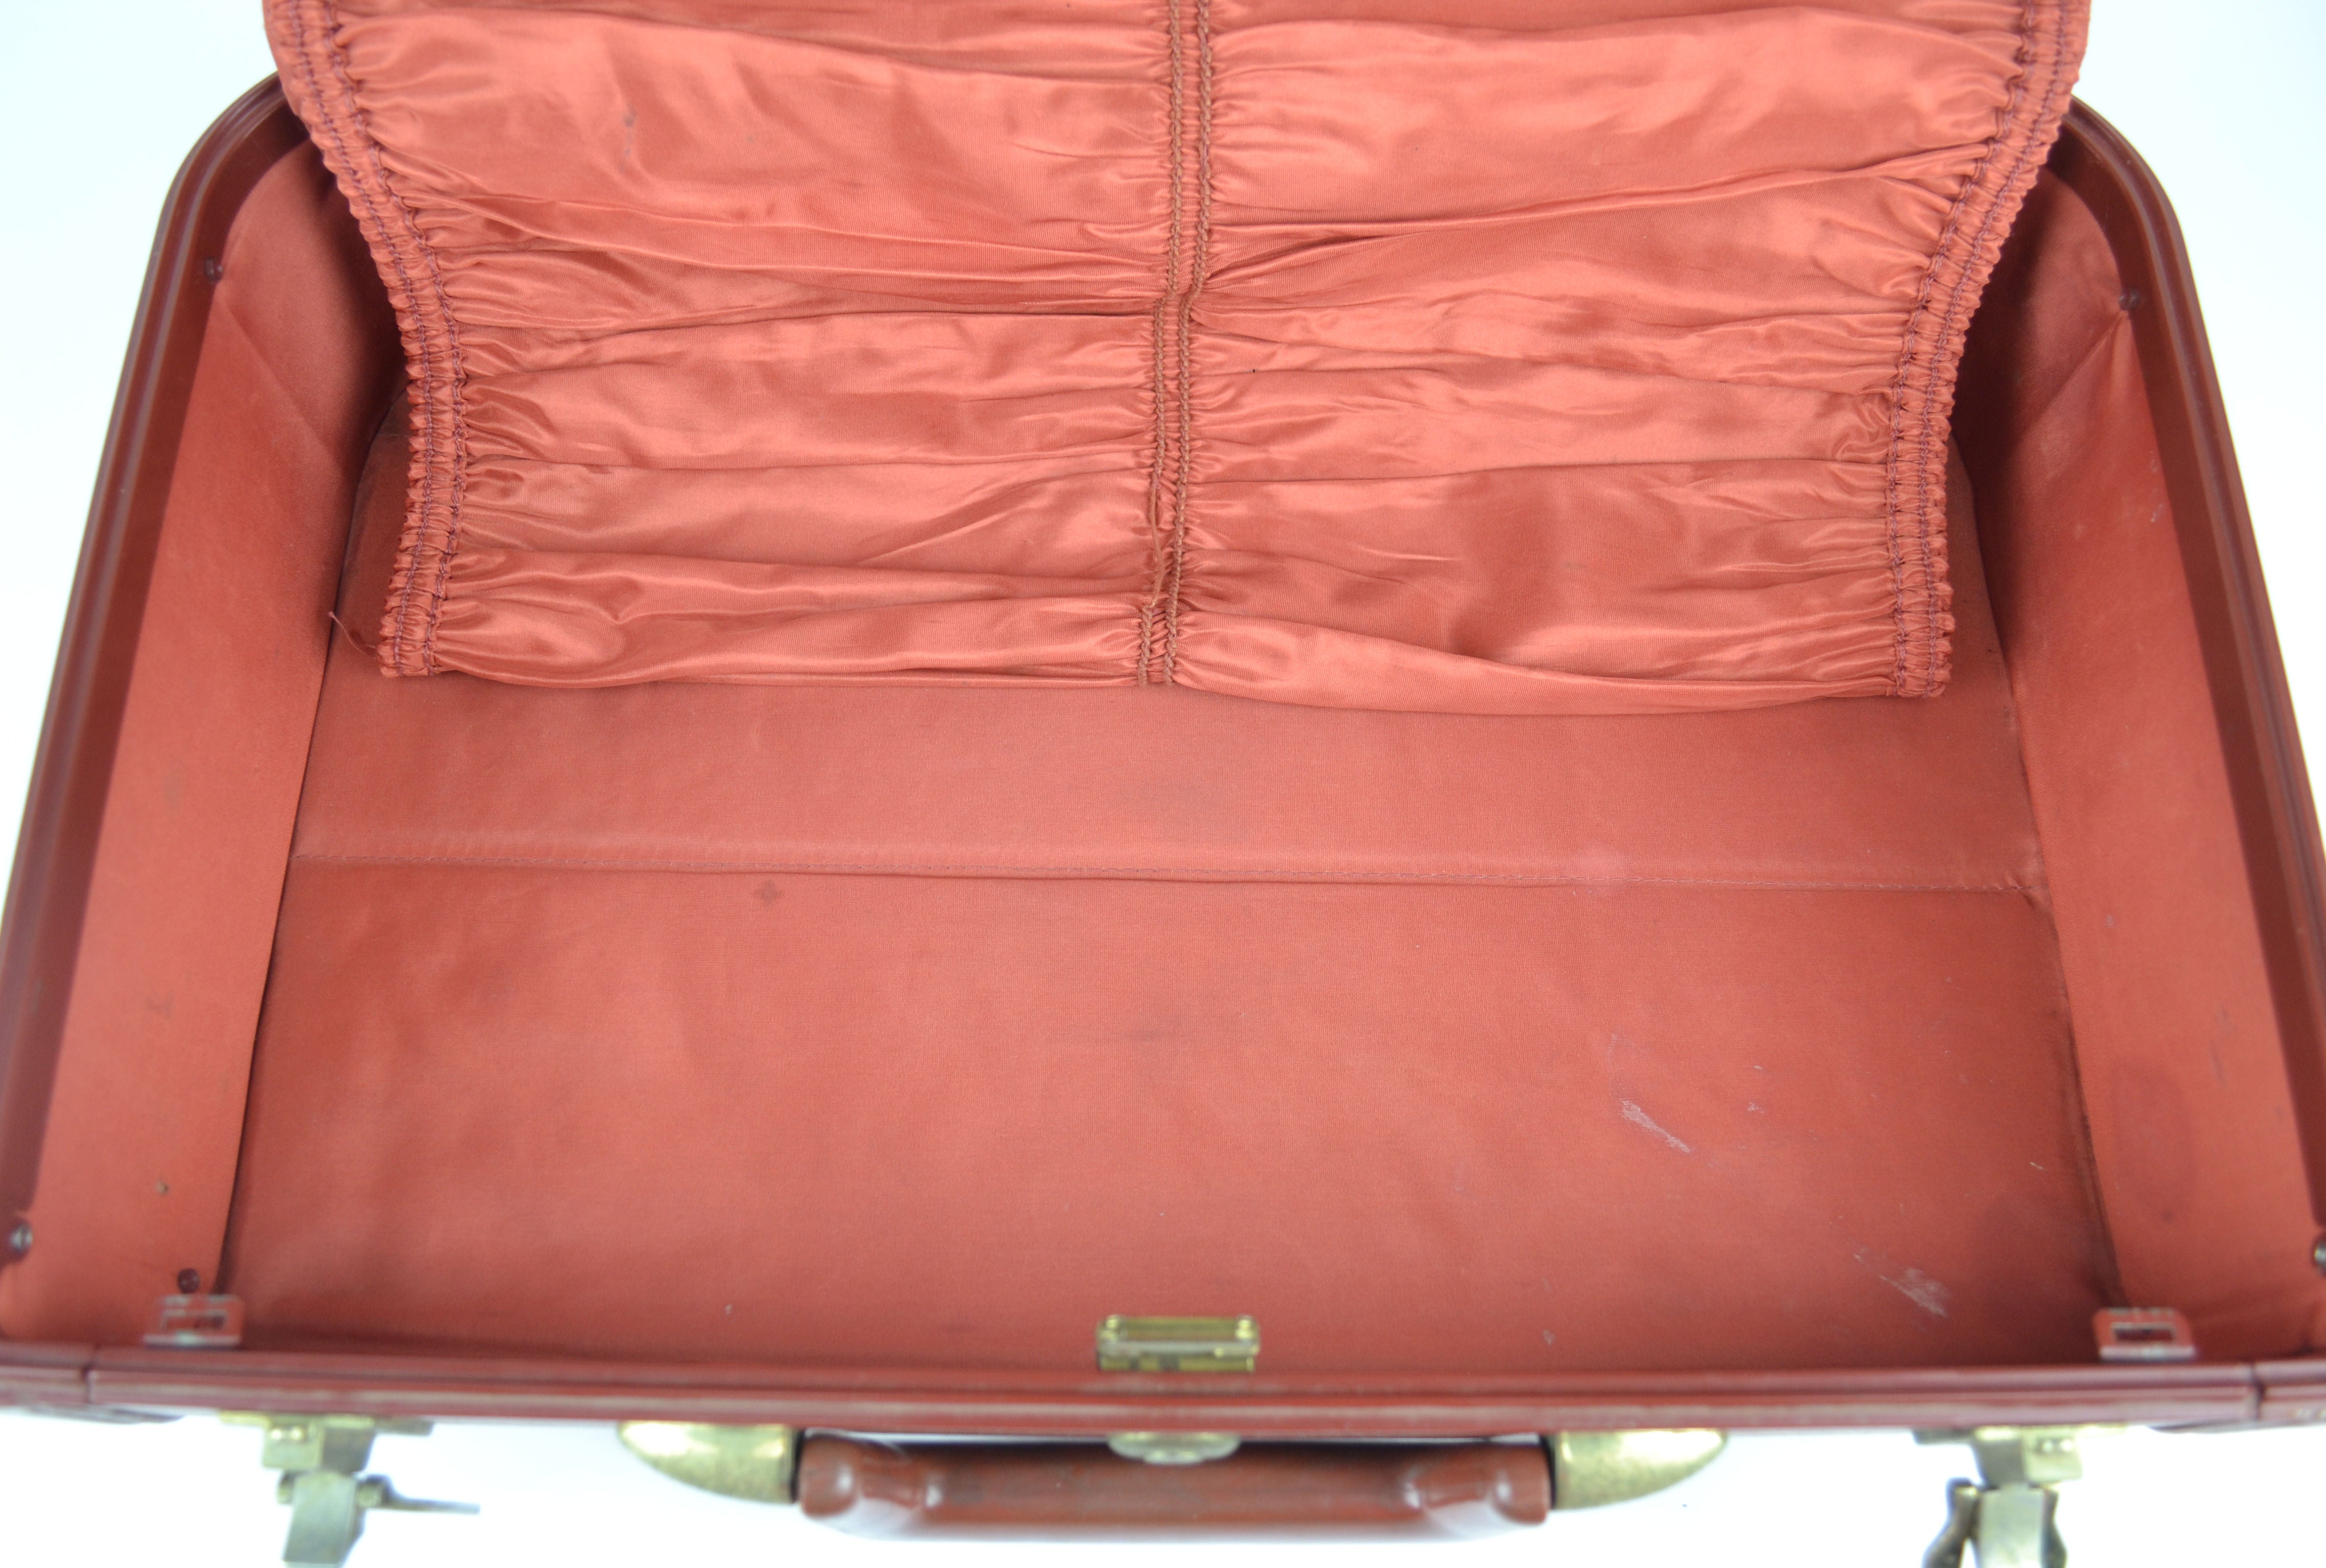 Vintage JC Higgins Luggage Hardside Suitcase Brown Travel Bag Gold Toned  Hardware